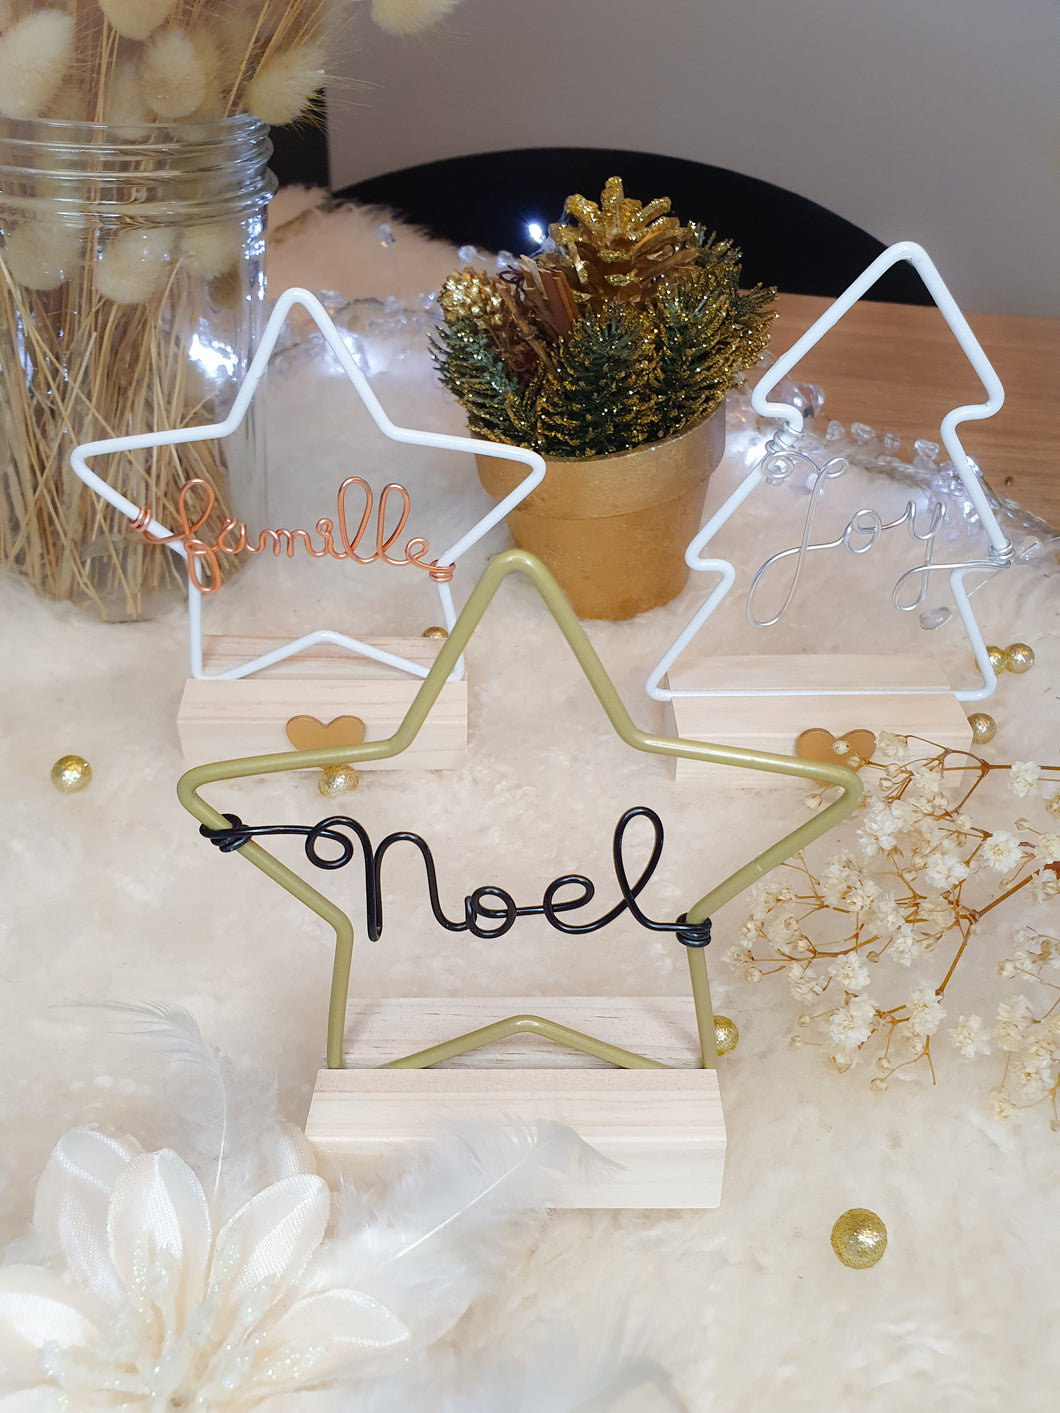 Décoration étoile ou sapin de Noël personnalisée avec prénom ou mot à suspendre ou poser cadeau invité fin d'année marque-place table Noel